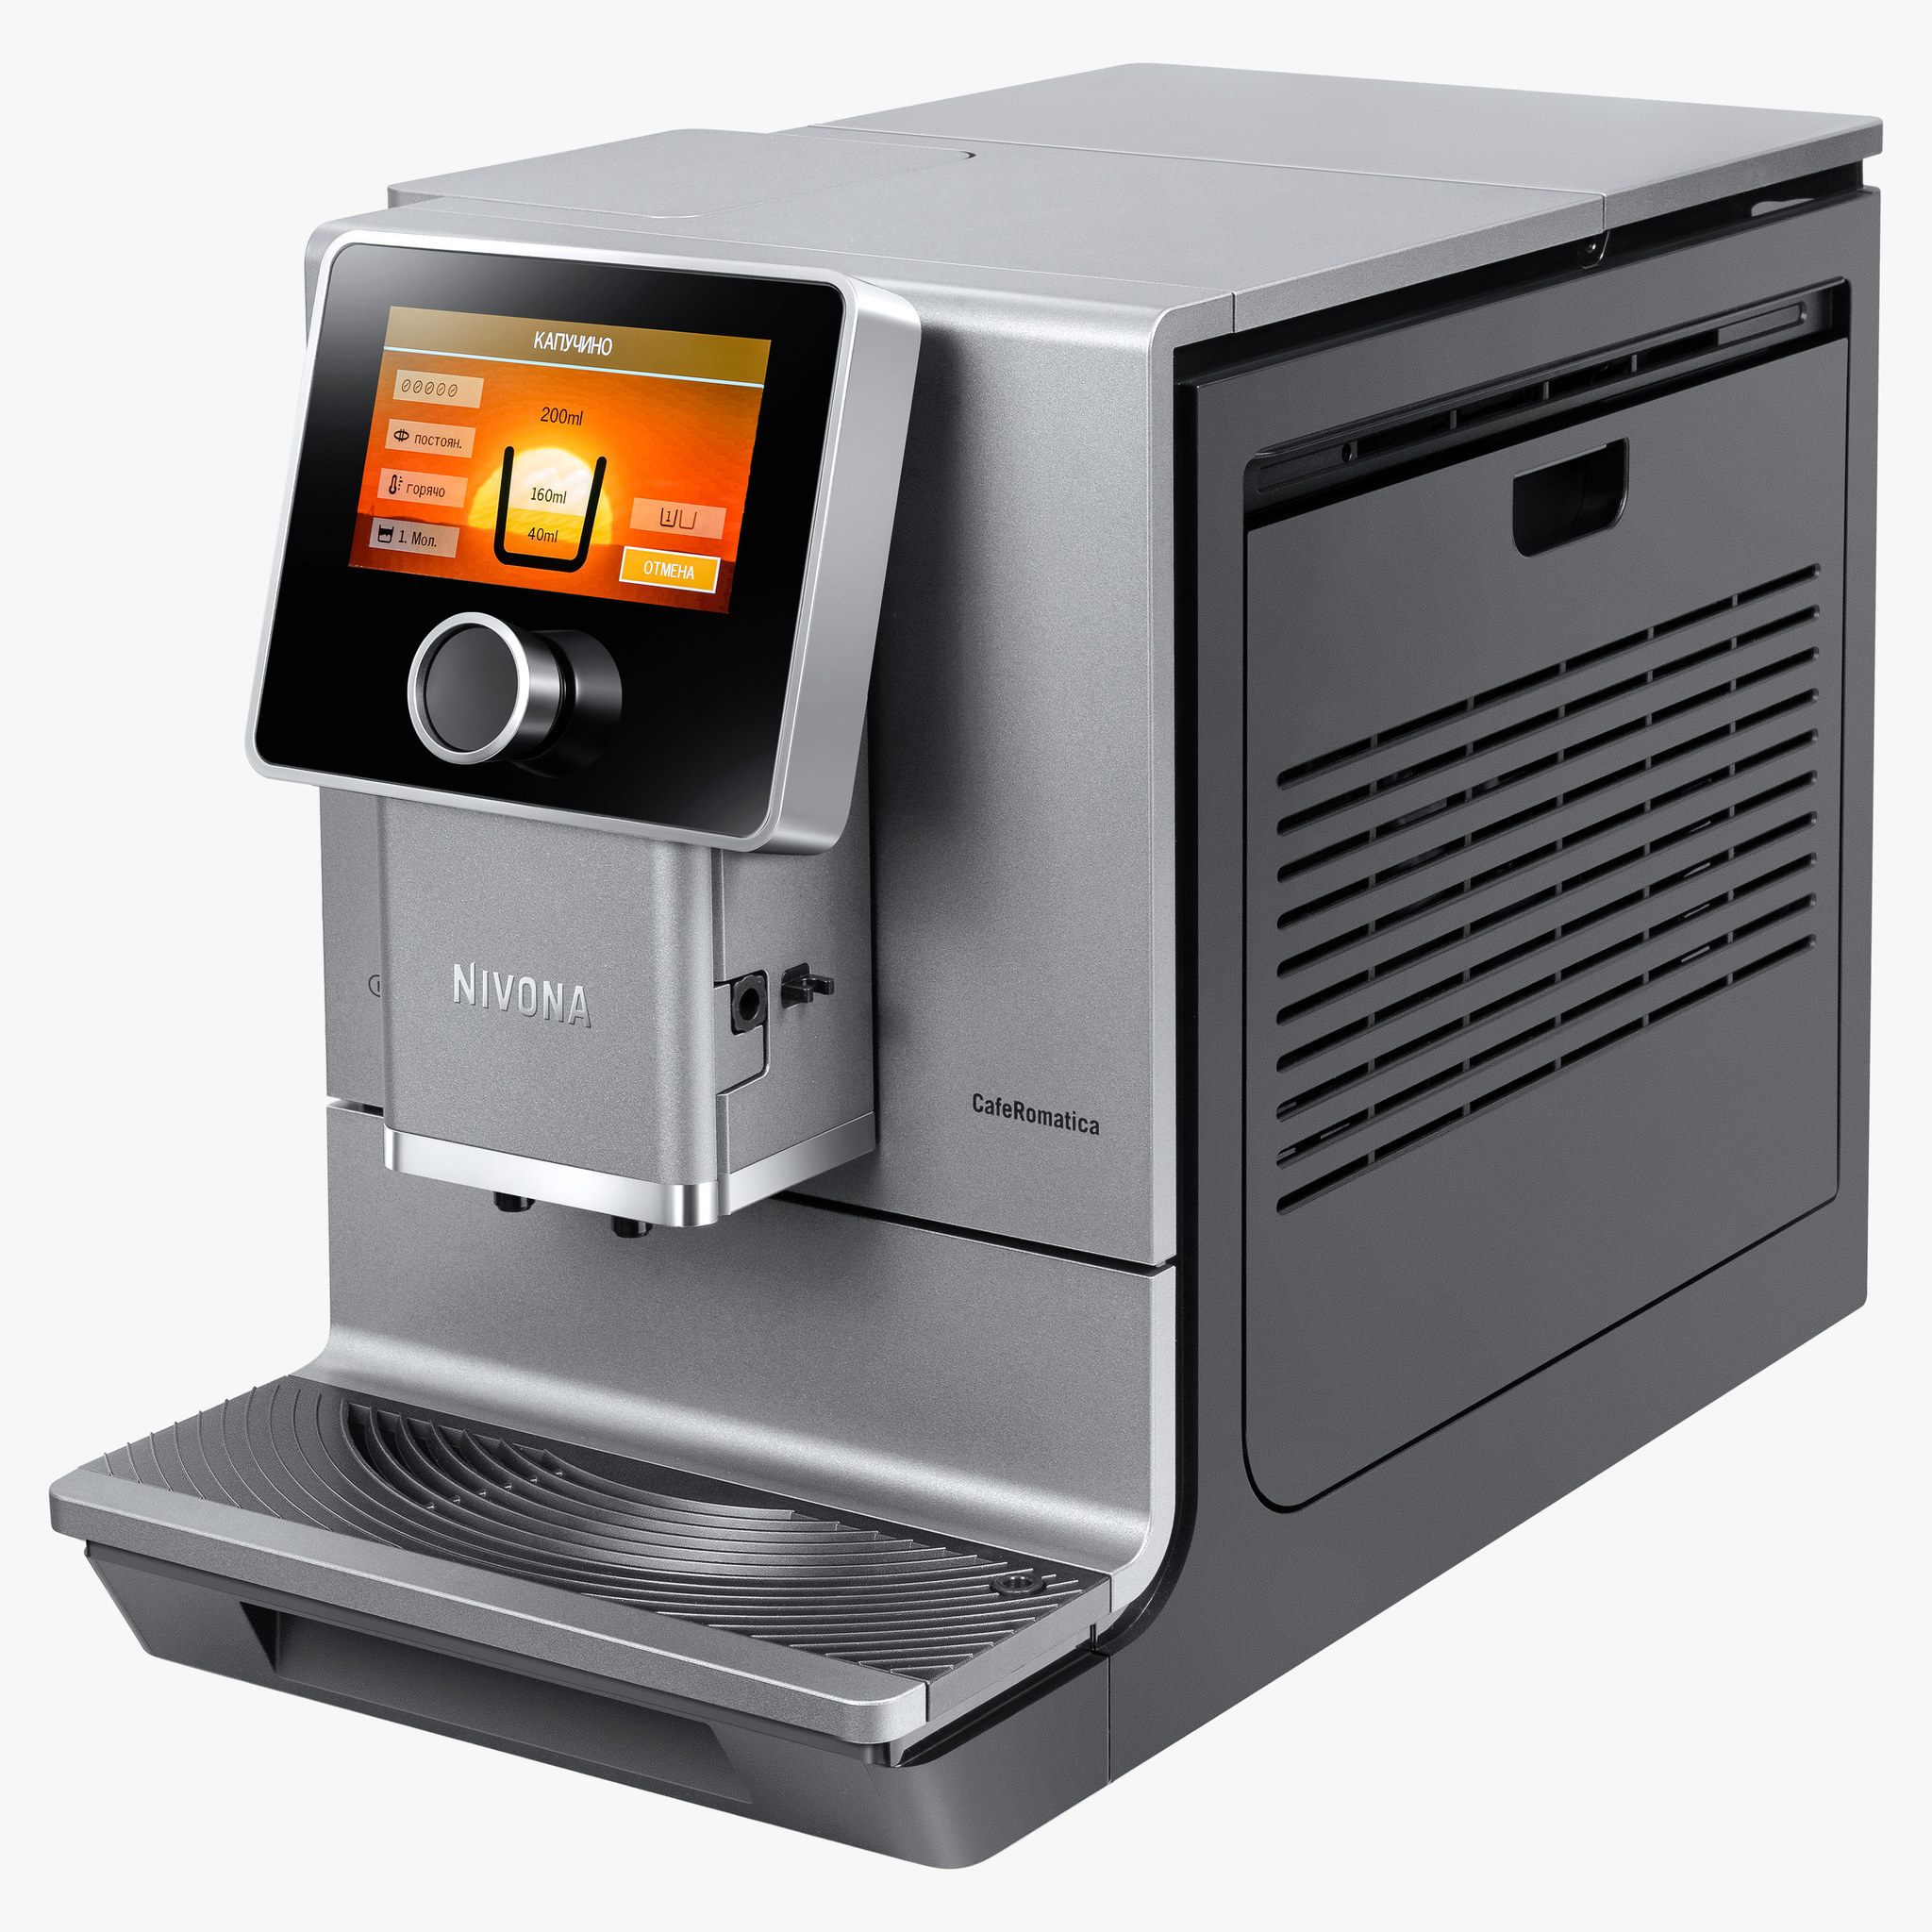 Кофемашина Nivona CafeRomatica NICR 970 - купить по выгодной цене